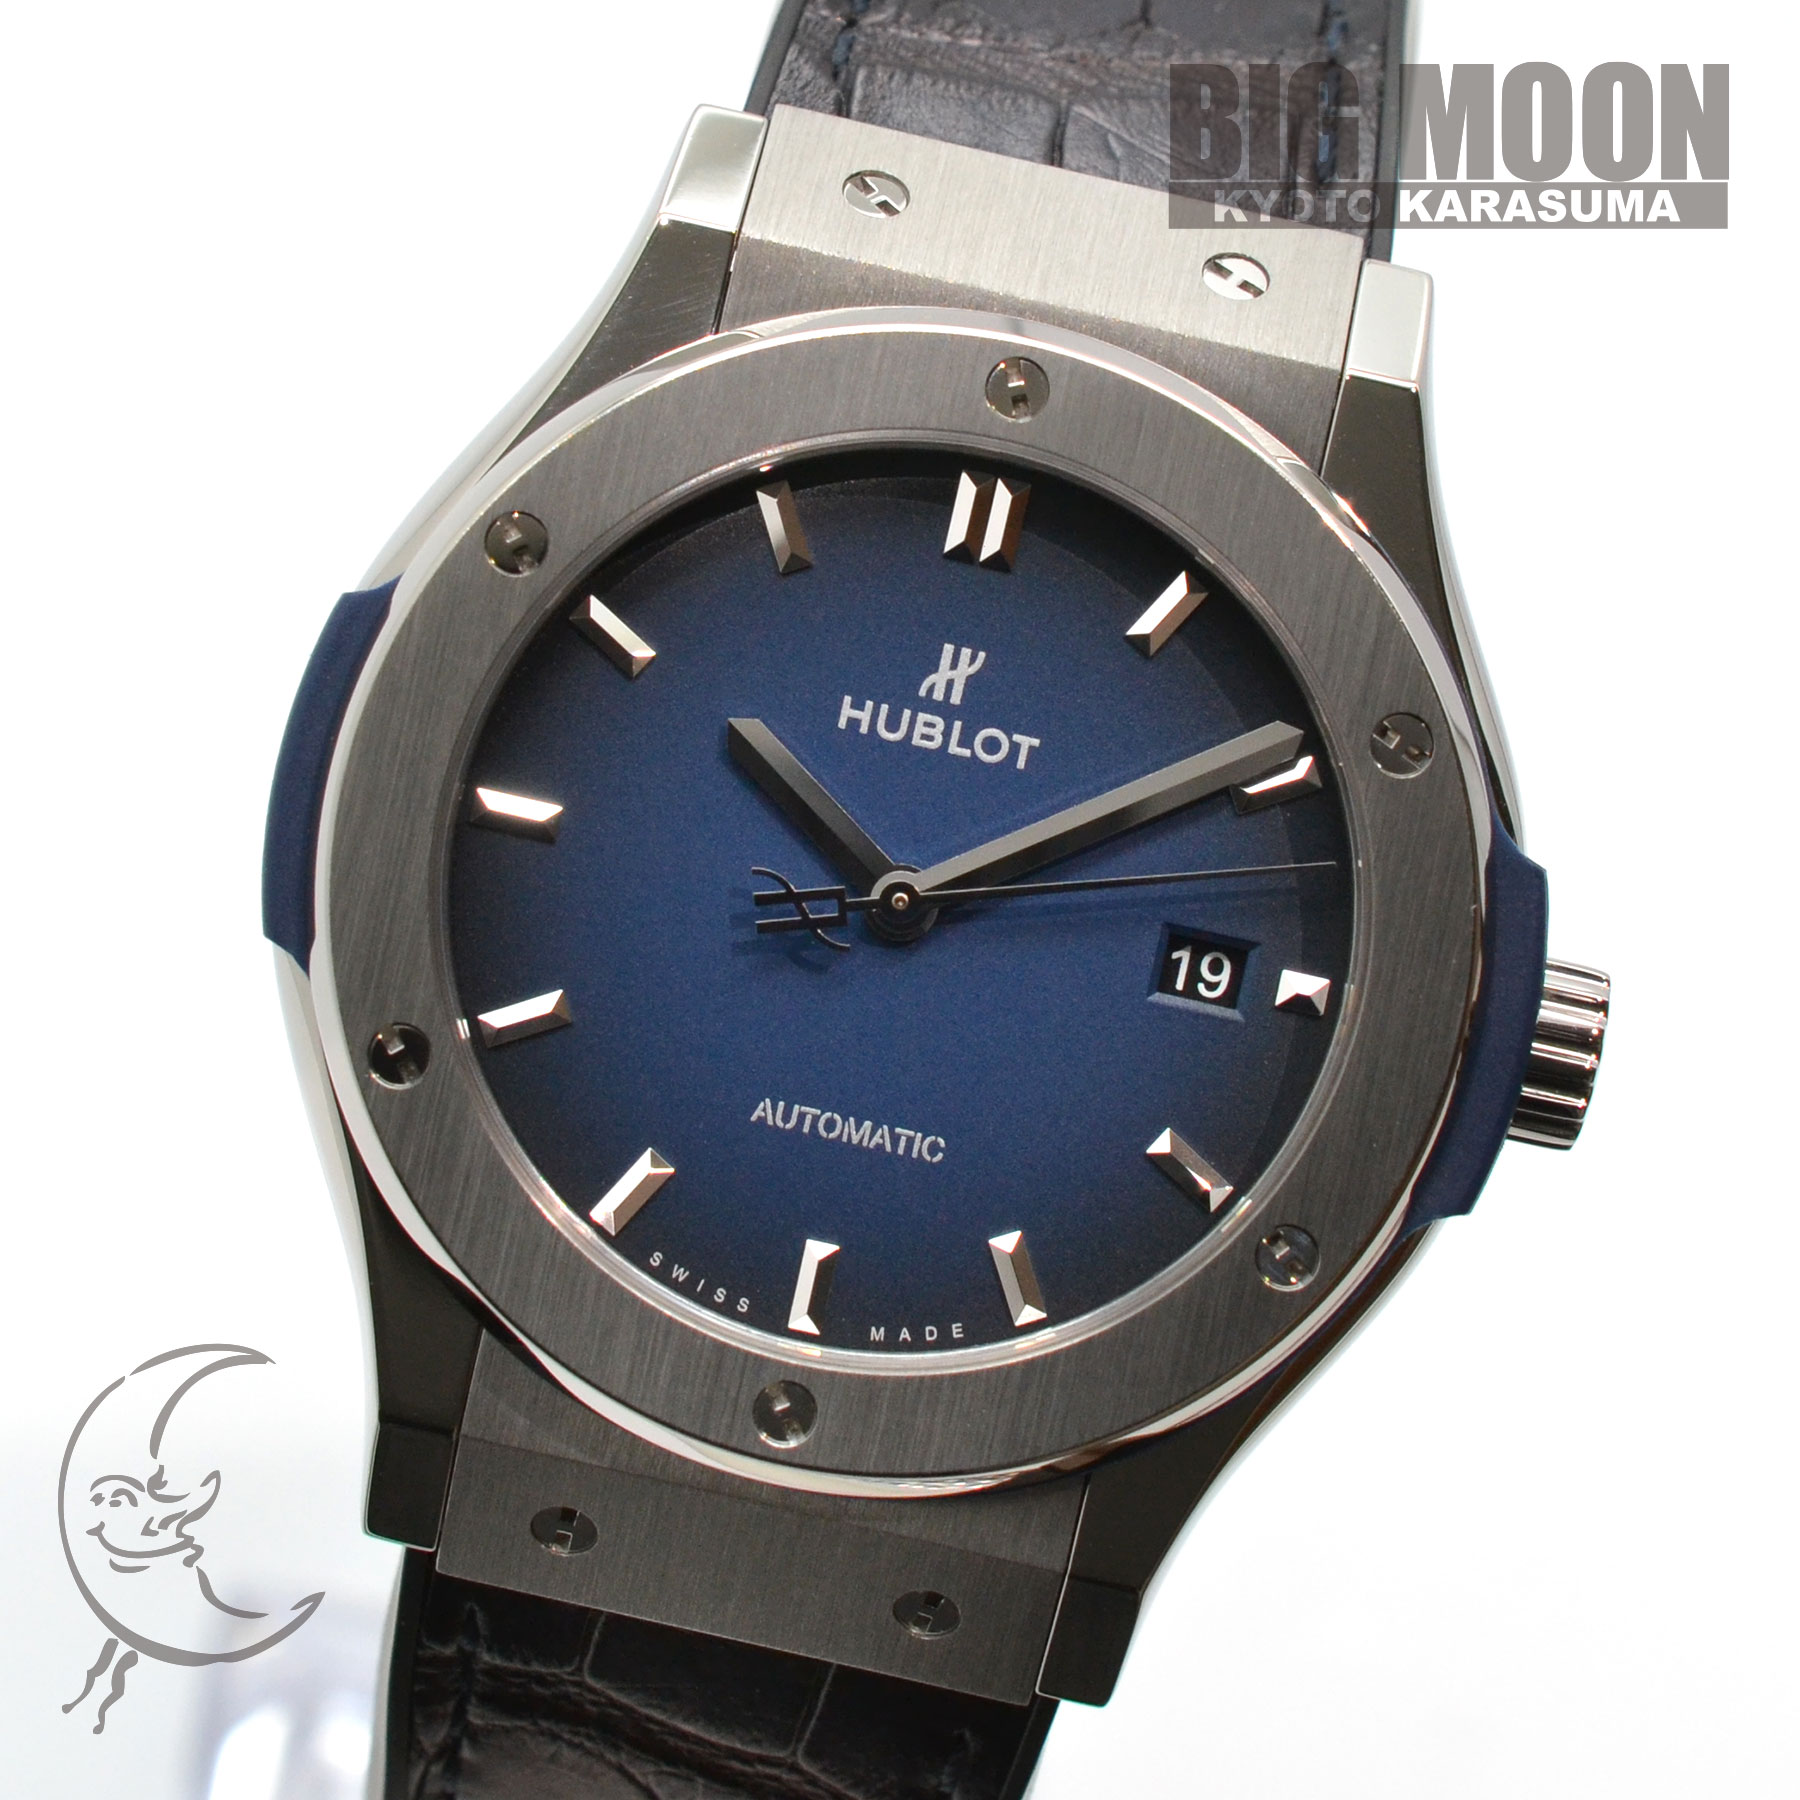 クラシックフュージョン チタニウム ディープブルー Ref.542.NX.6670.LR.JPN18 品 メンズ 腕時計